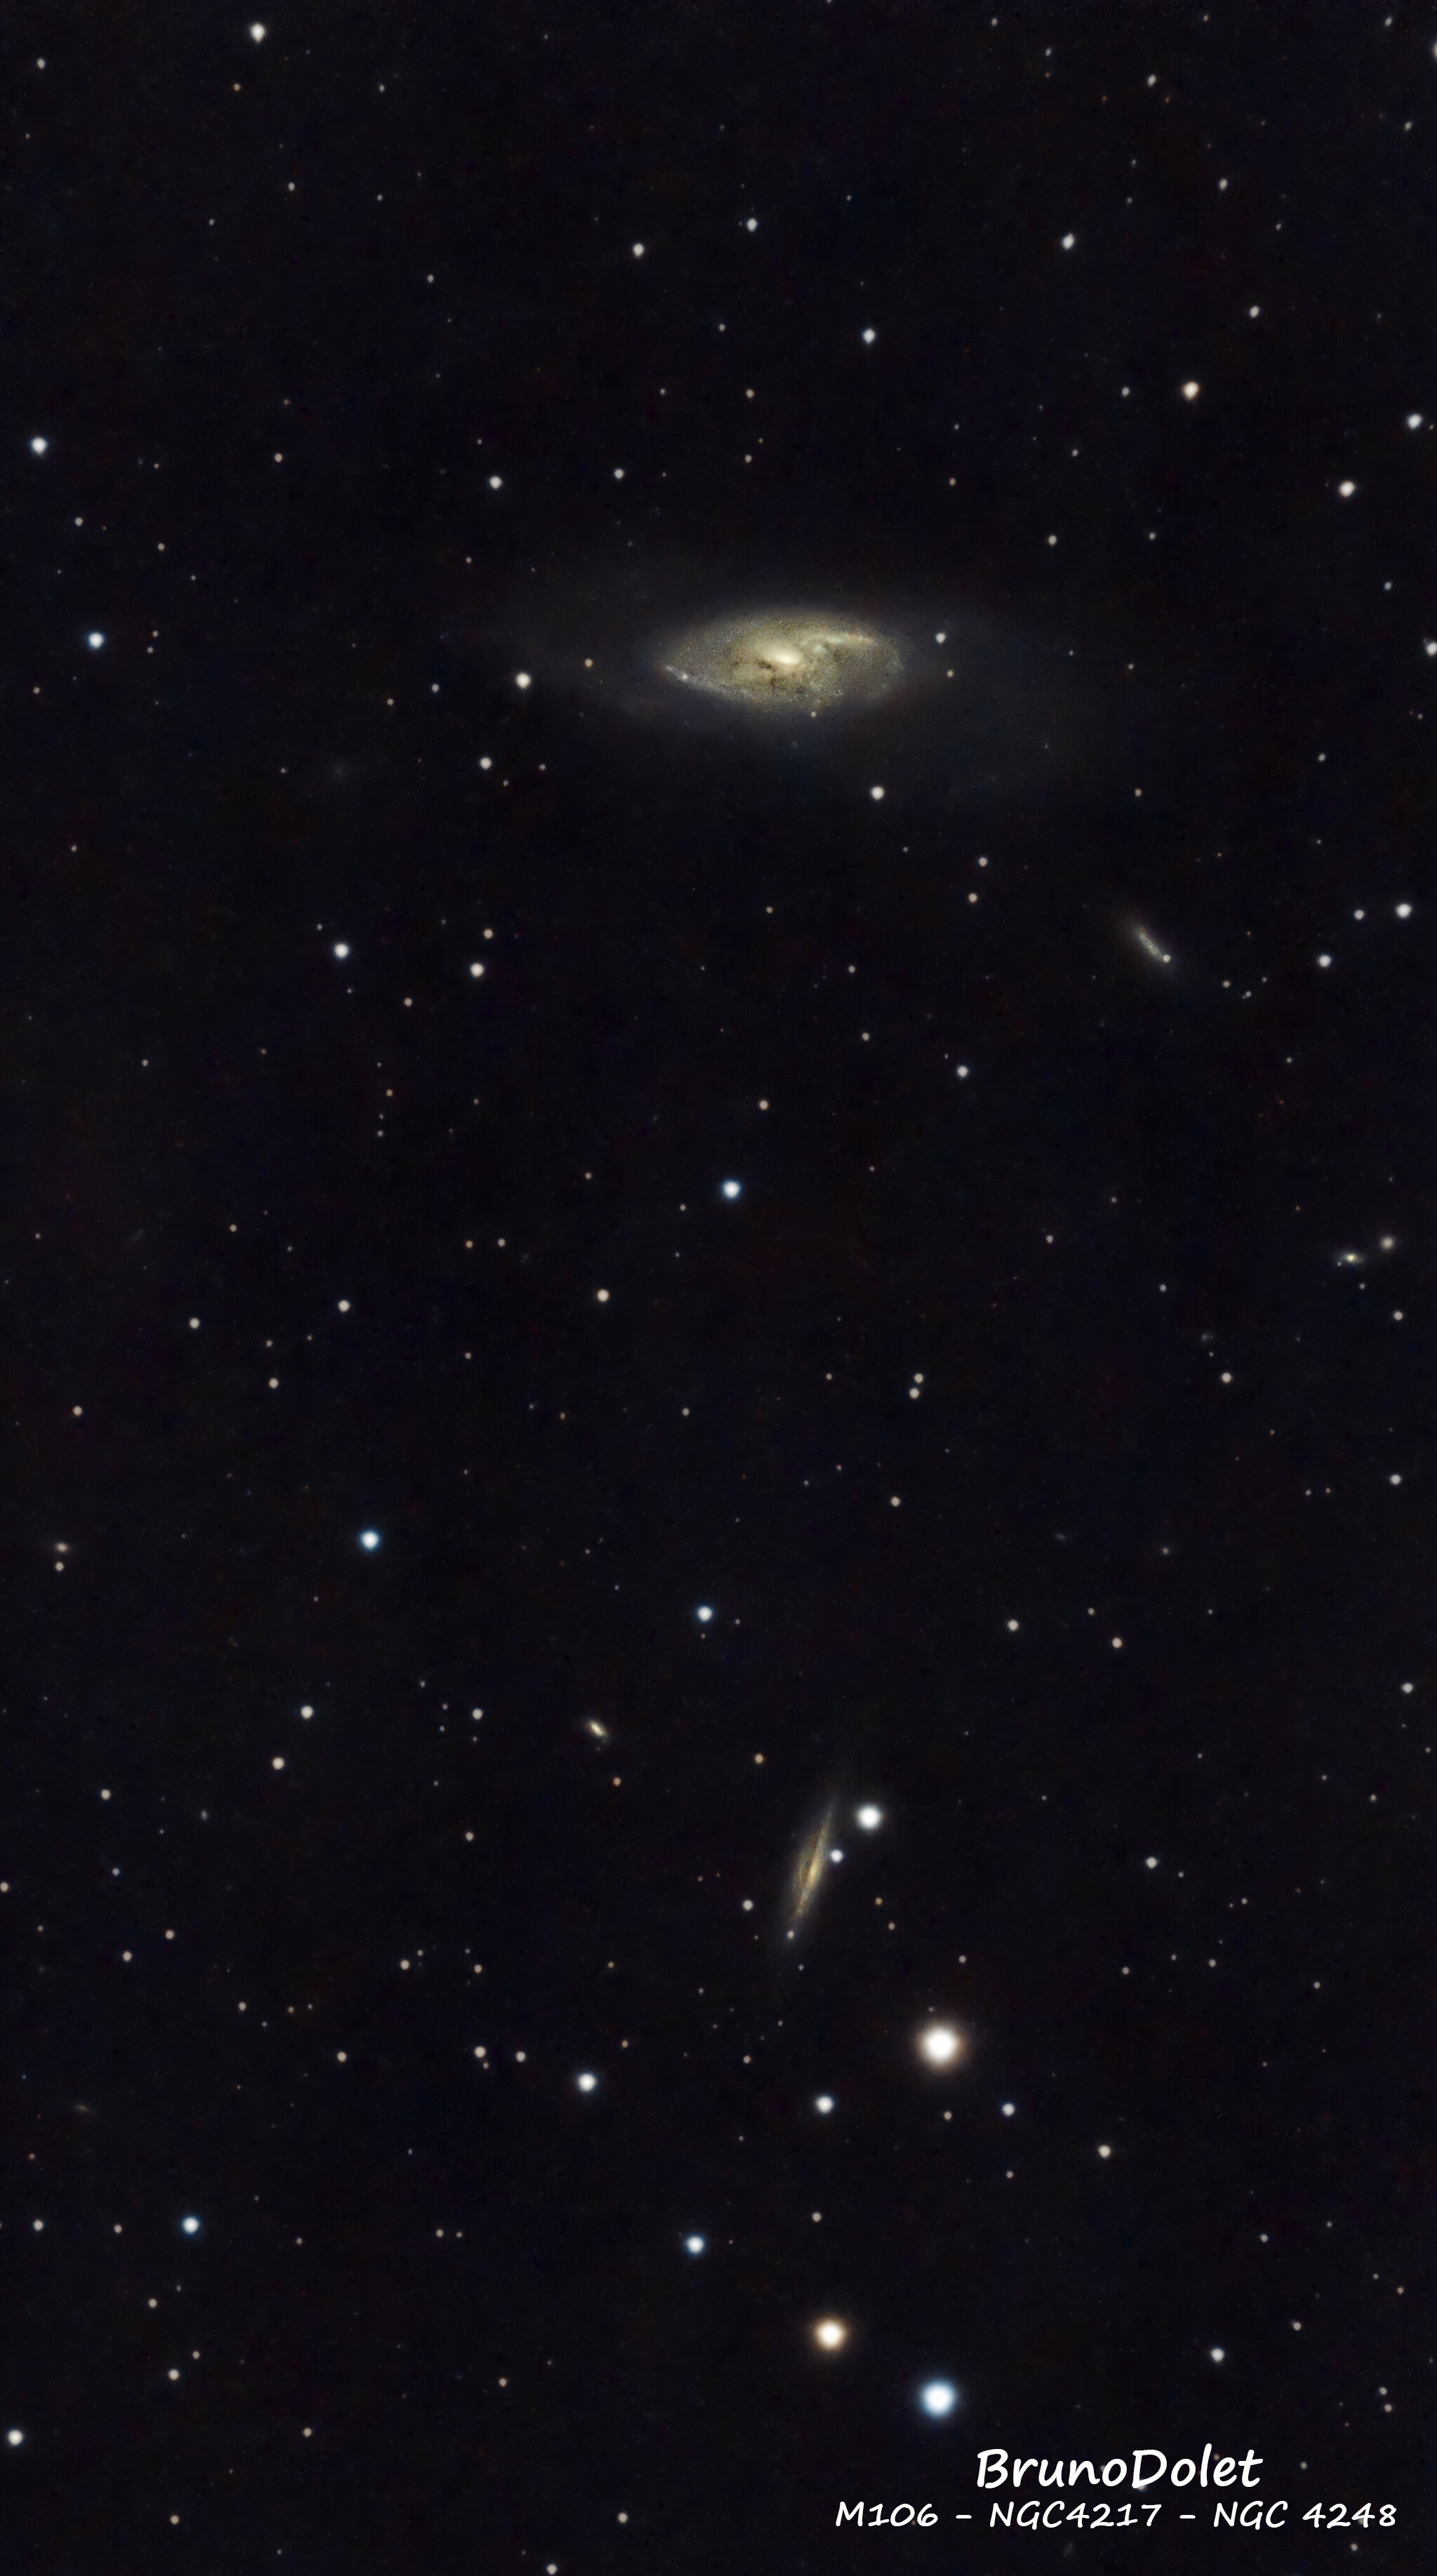 Plus d’informations sur « Images du Seestar - M106 - NGC4217 - NGC 4248 »